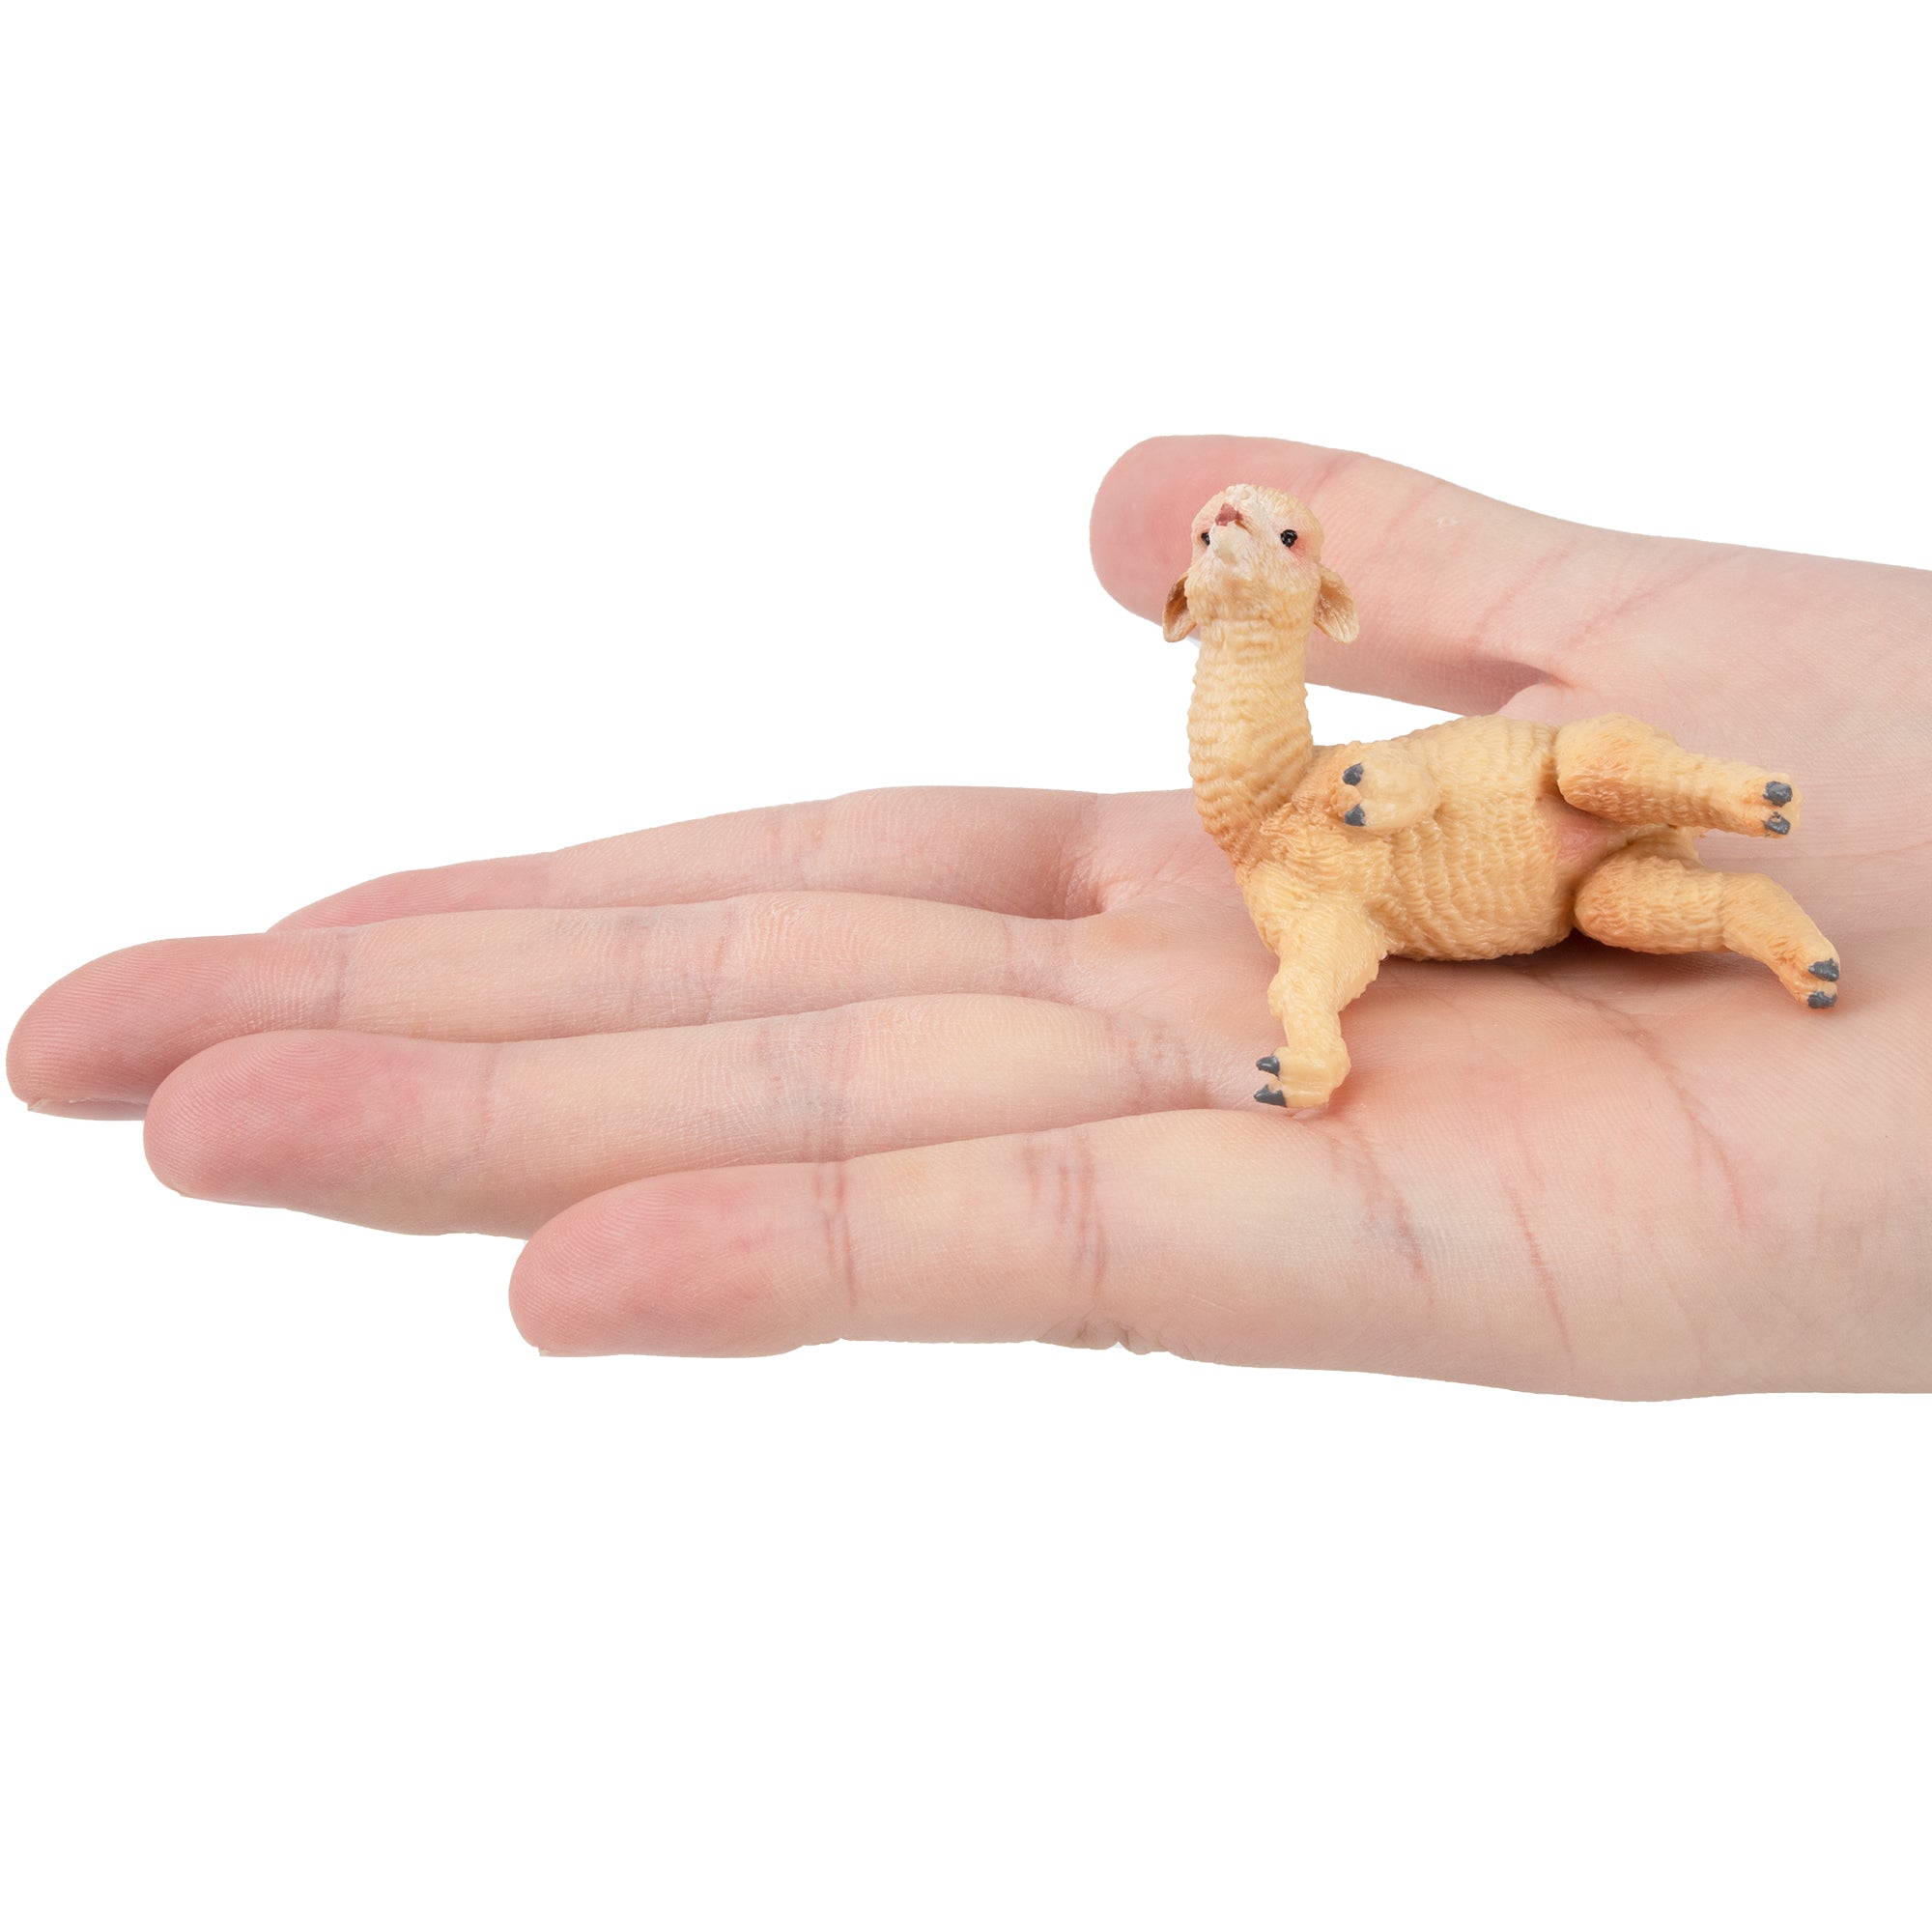 Toymany Playful Alpaca Baby Figurine Toy-on hand